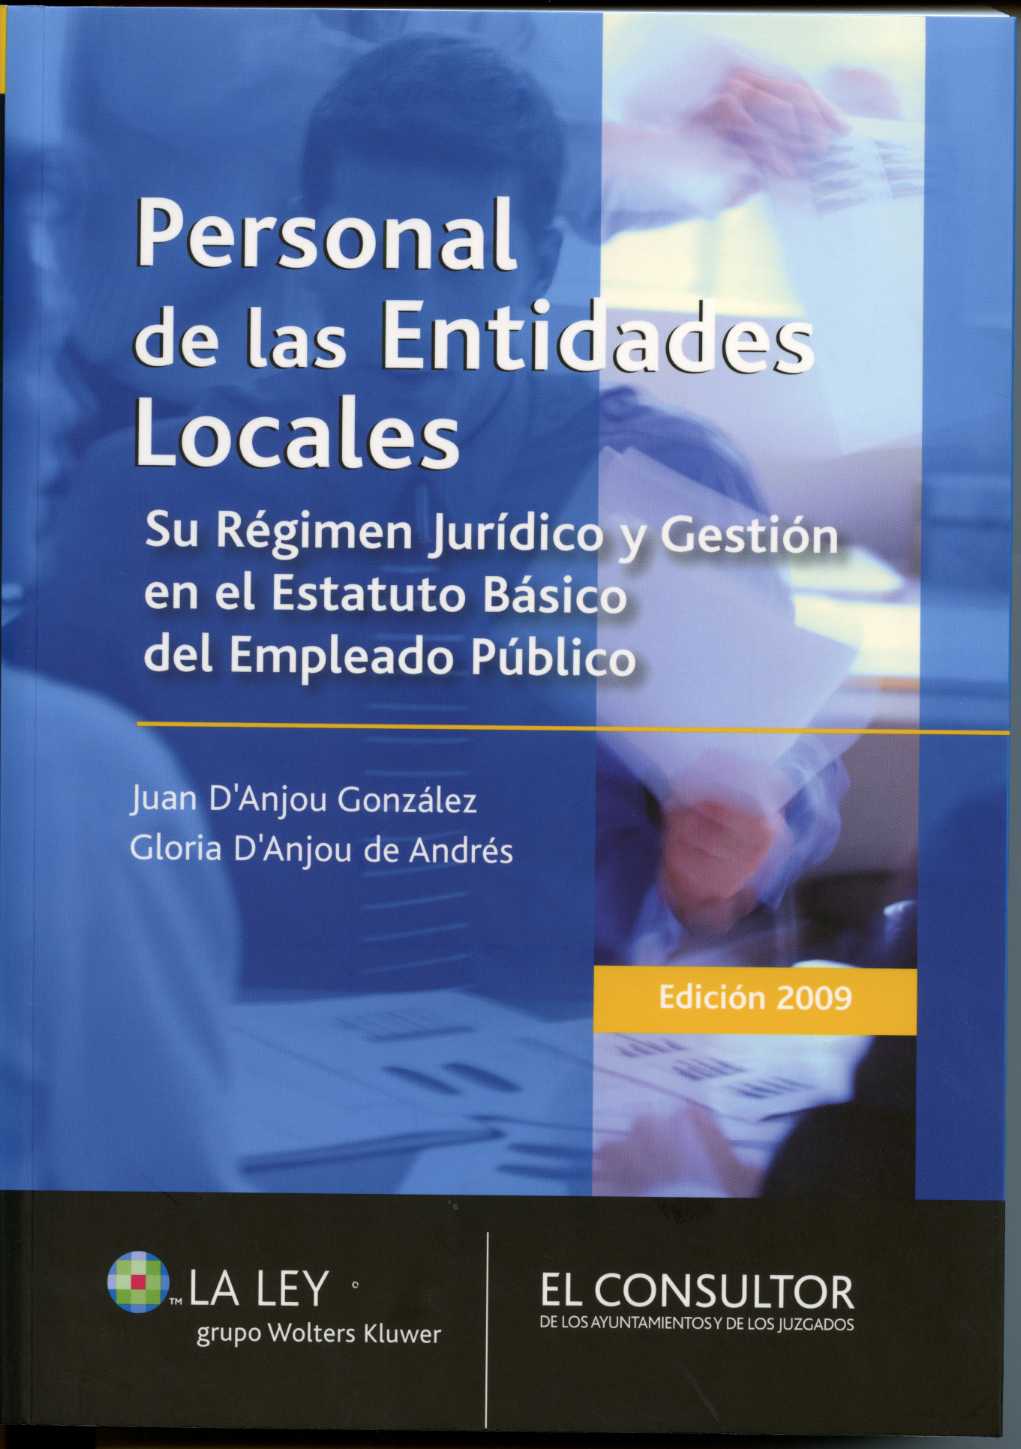 Personal de las Entidades Locales. 2009 Su Régimen Jurídico y Gestión en el Estatuto Básico del Empleado Público.-0